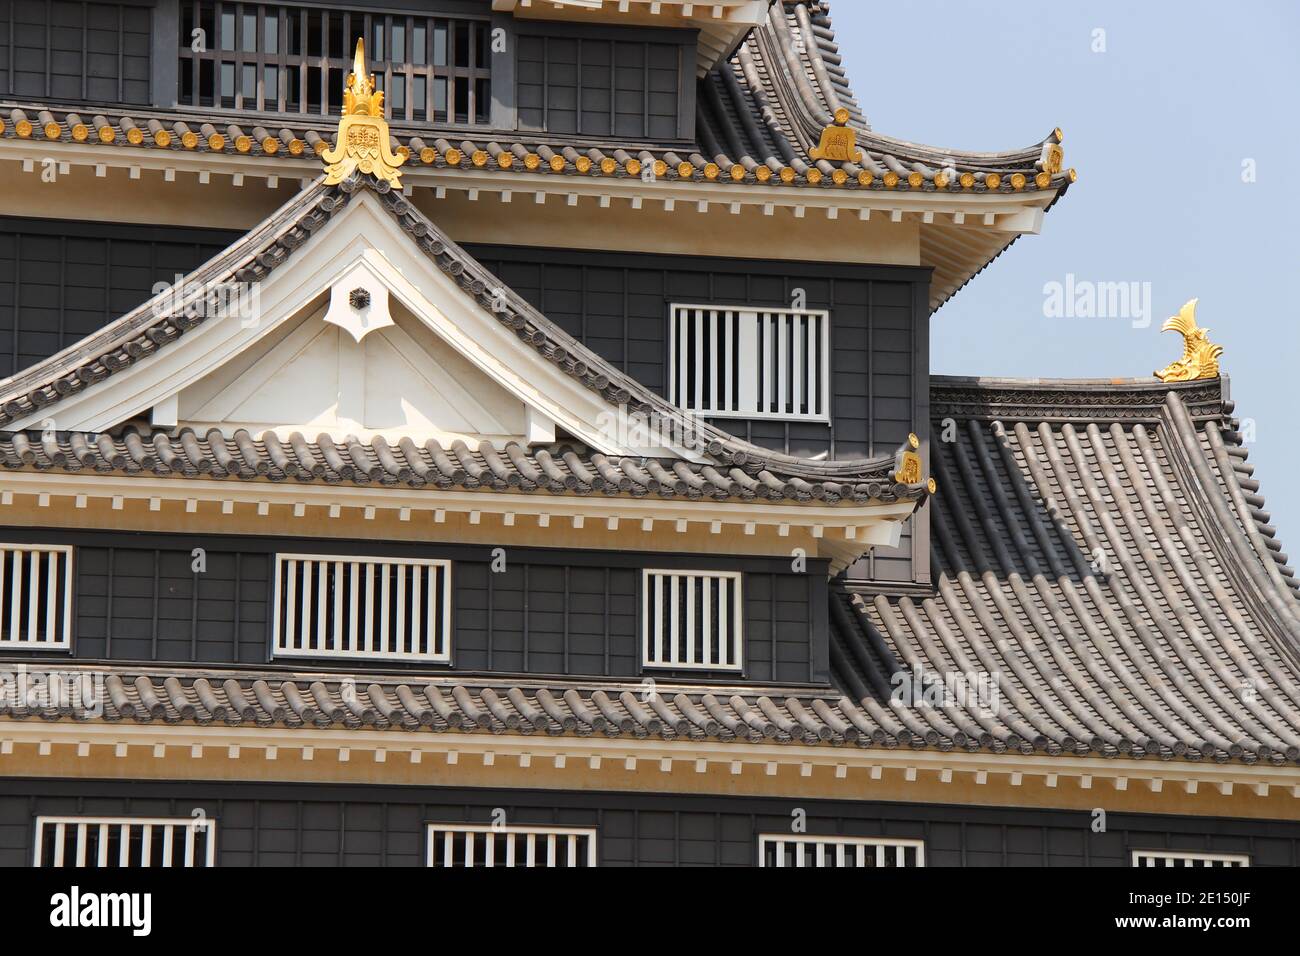 château d'okayama au japon Banque D'Images